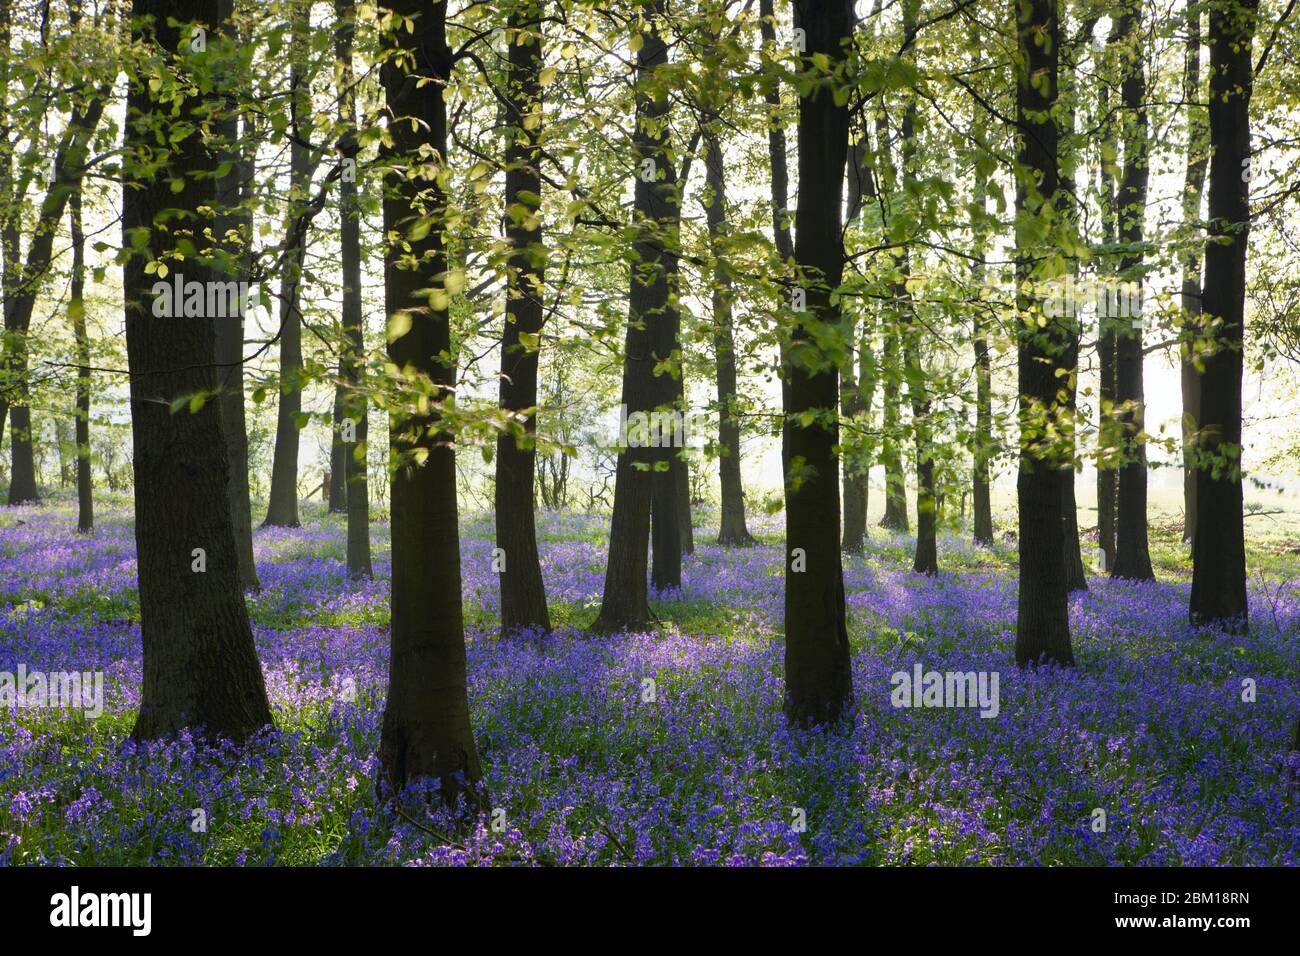 Los arándanos de madera de DocKey cubren el suelo del bosque con una alfombra azul durante la primavera Foto de stock